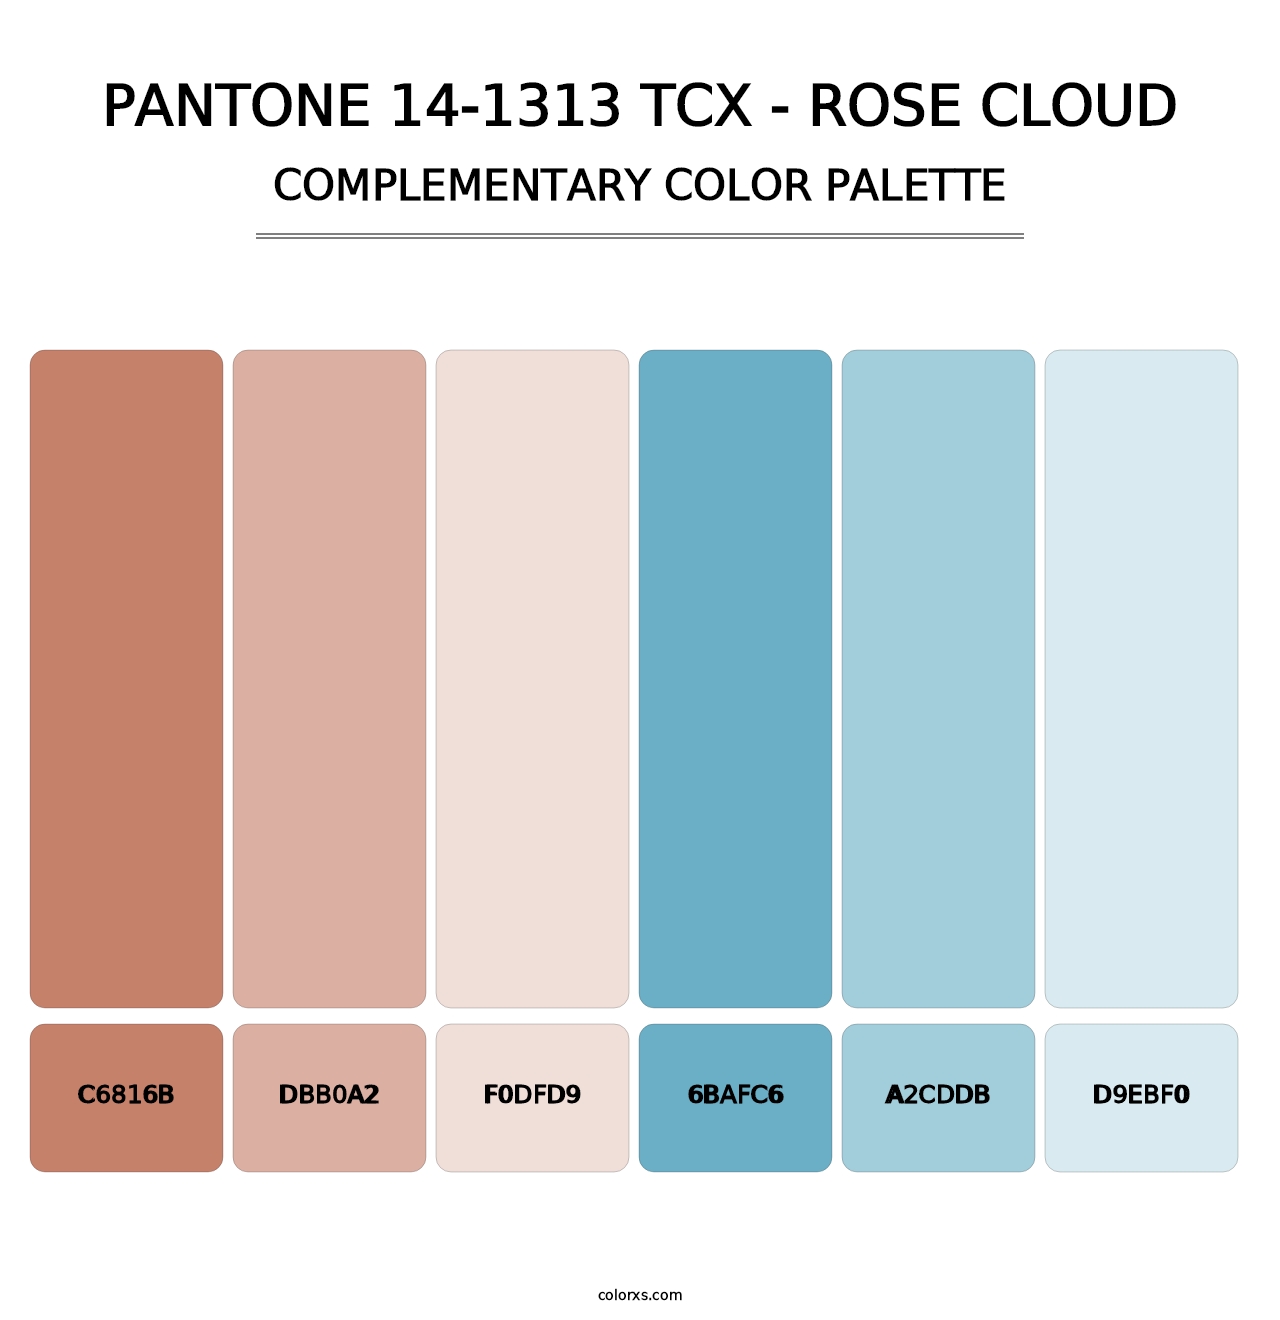 PANTONE 14-1313 TCX - Rose Cloud - Complementary Color Palette